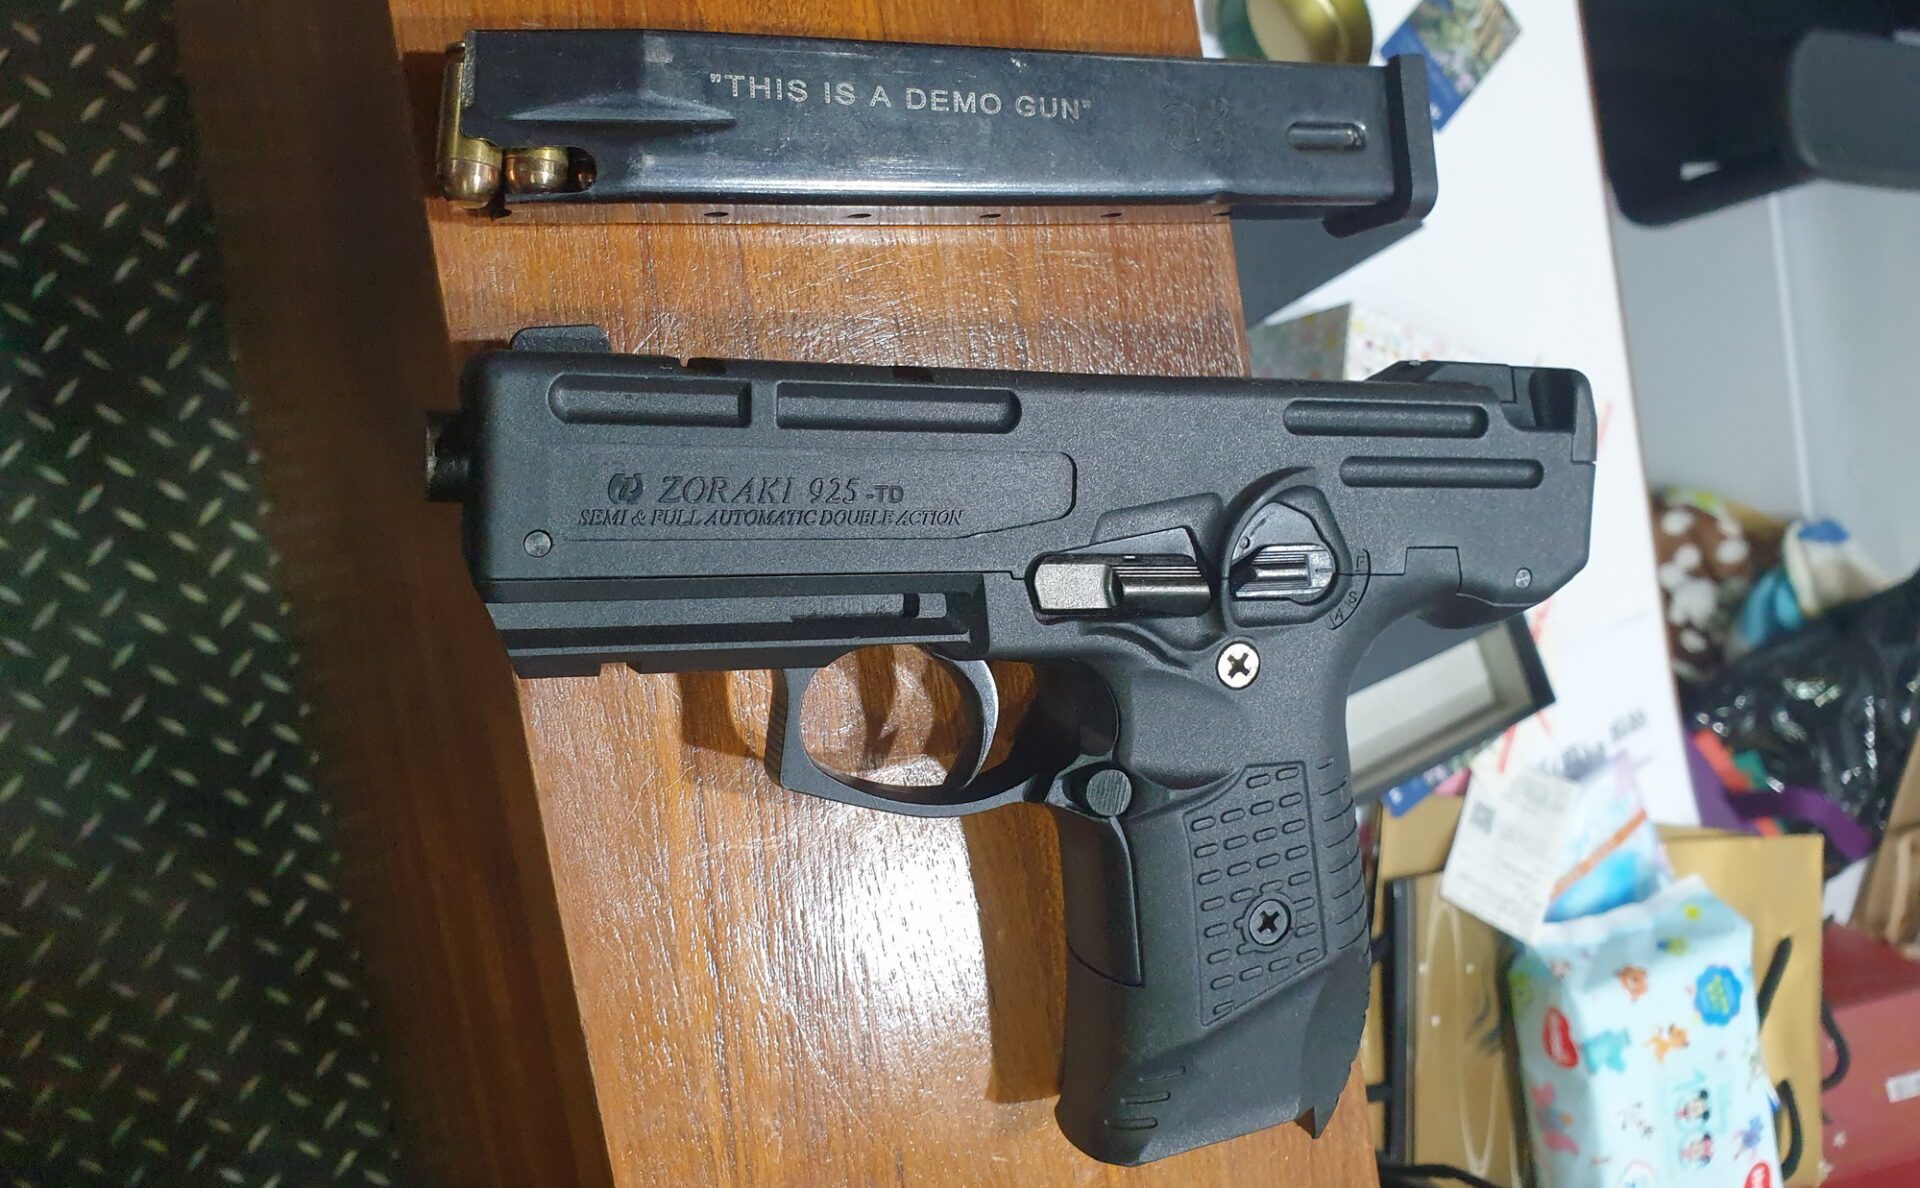 警方現場查扣罕見的土耳其925型制式手槍1把，彈匣內有子彈15顆。(刑事警察局提供)